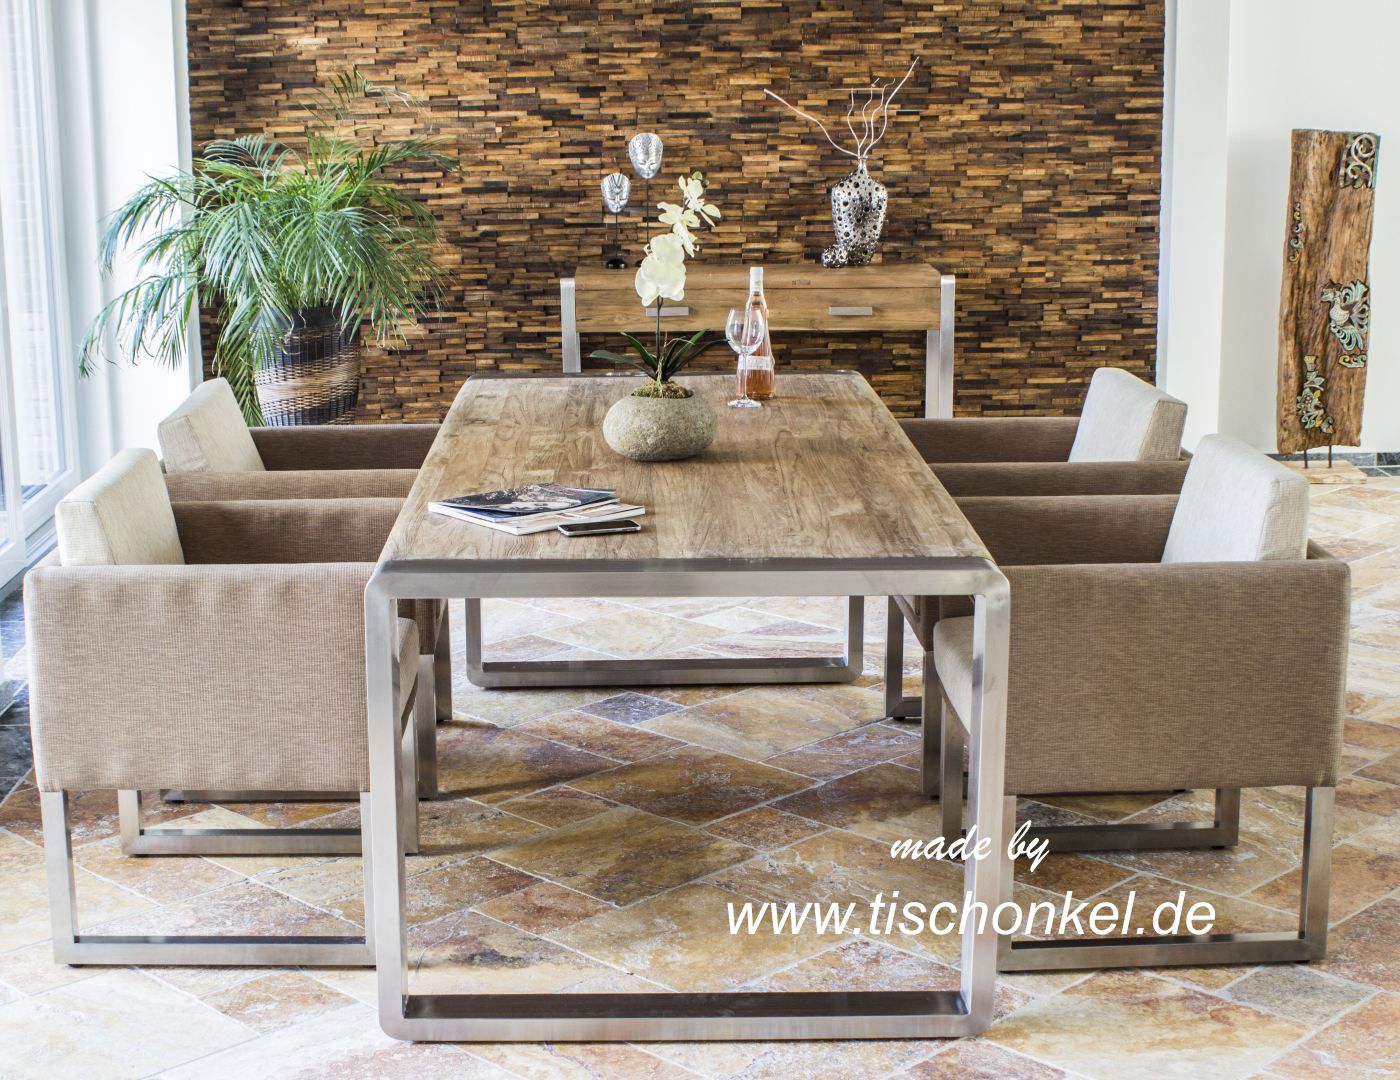 Esstisch aus recyceltem Holz mit Edelstahl : Der Tischonkel